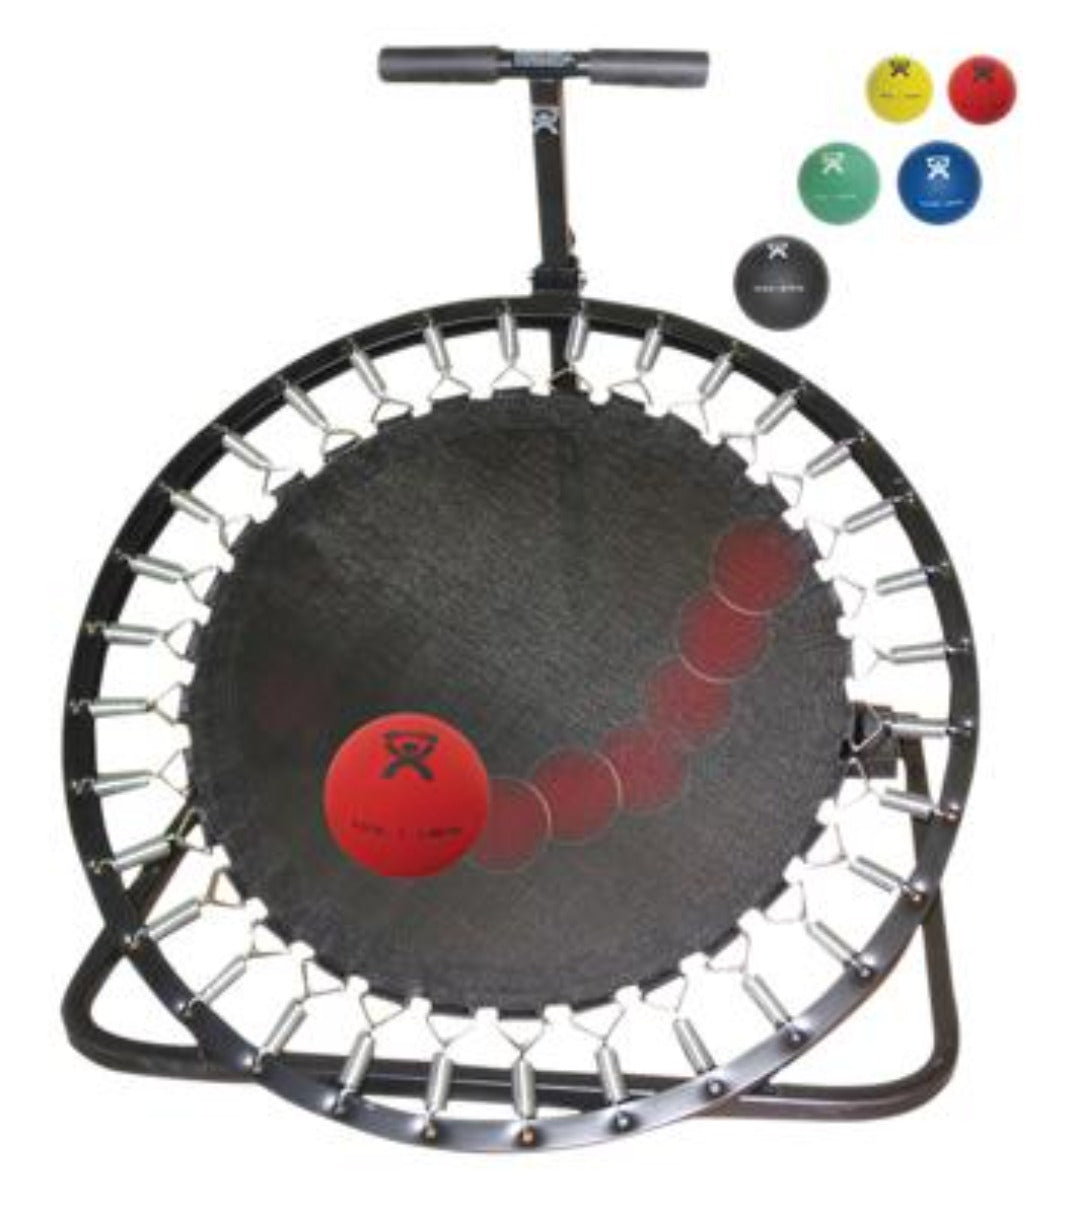 CanDo Circular Ball Rebounder with Plastic Rack & Medicine Ball 5-Piece Set - Senior.com Exercise Balls